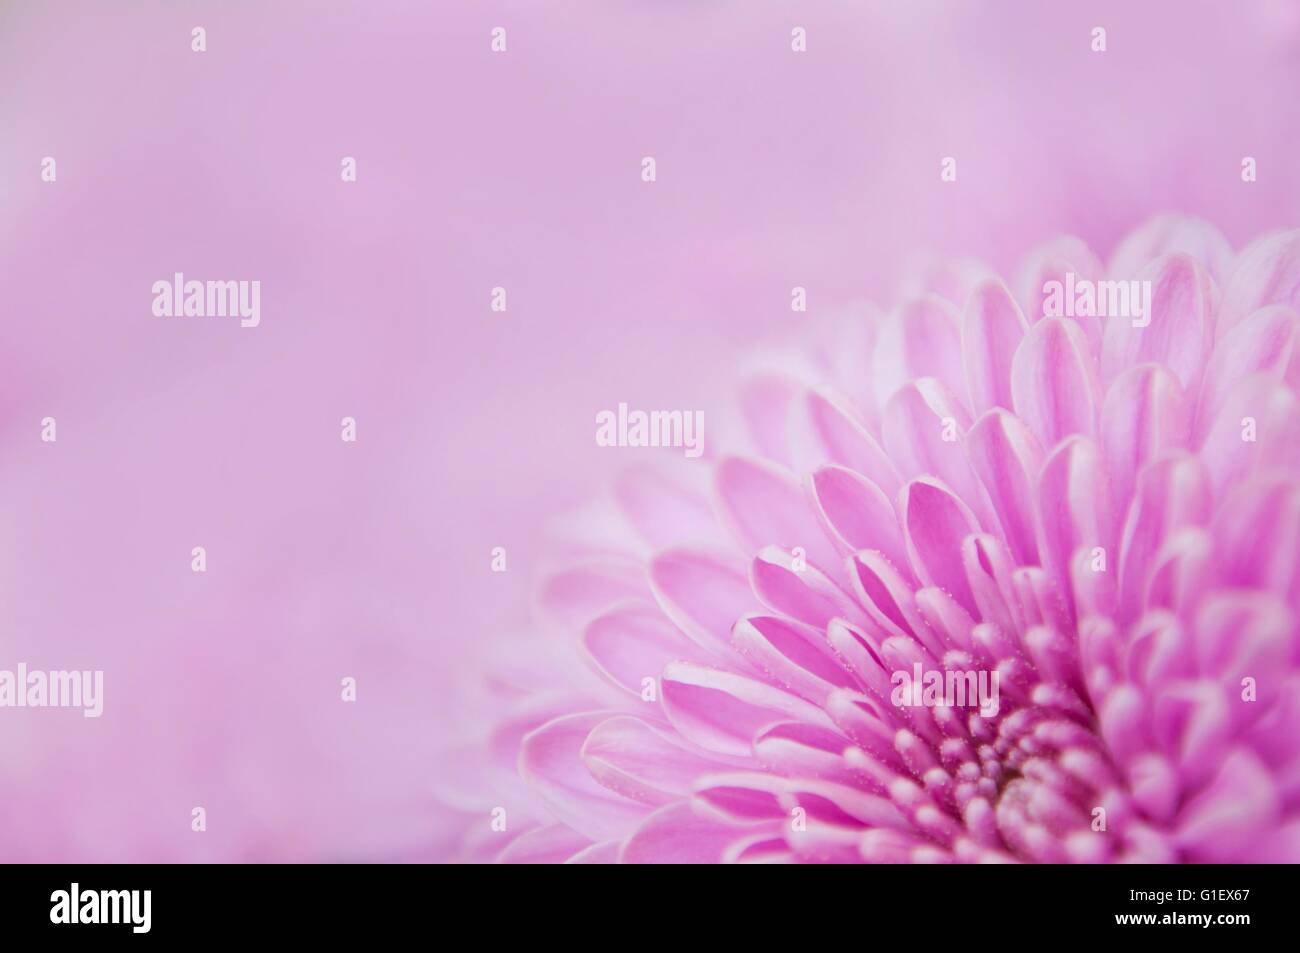 Détail de belles fleurs chrysanthème mauve dans la partie inférieure droite de l'image. Arrière-plan flou Banque D'Images